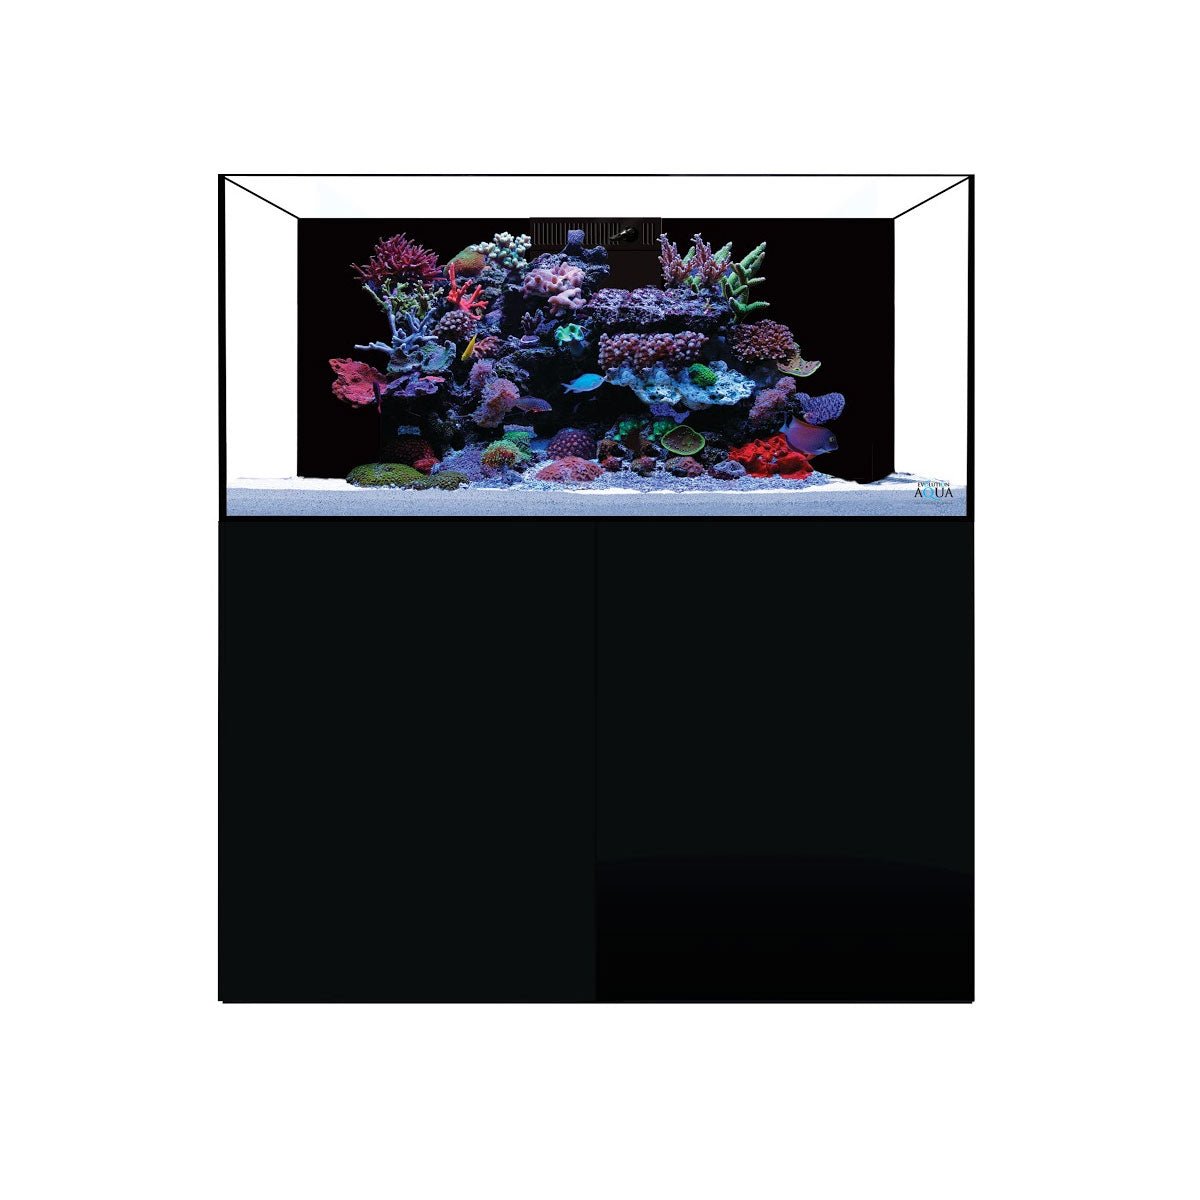 D-D Aqua-Pro Reef 1200 - Matt Anthracite - Wooden Cabinet - Charterhouse Aquatics